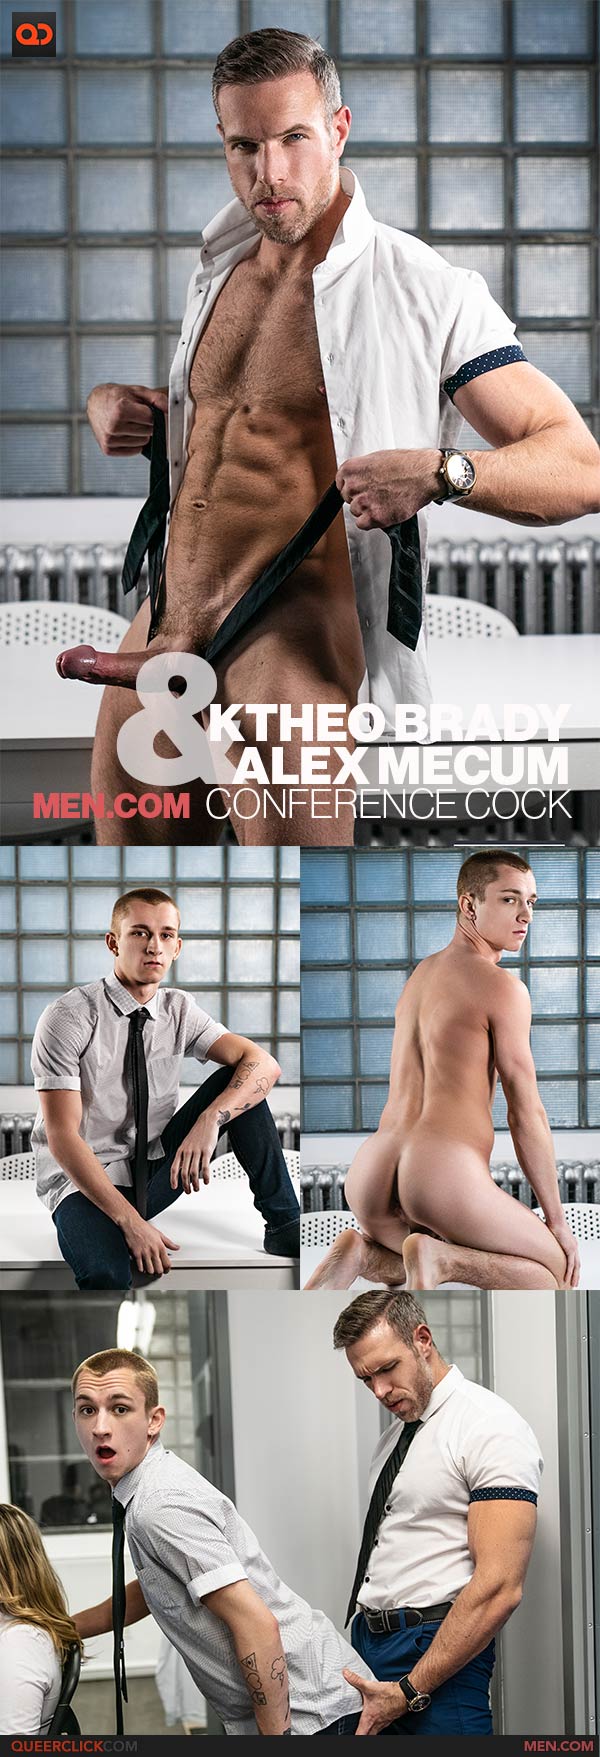 Men.com: Theo Brady and Alex Mecum - Conference Cock